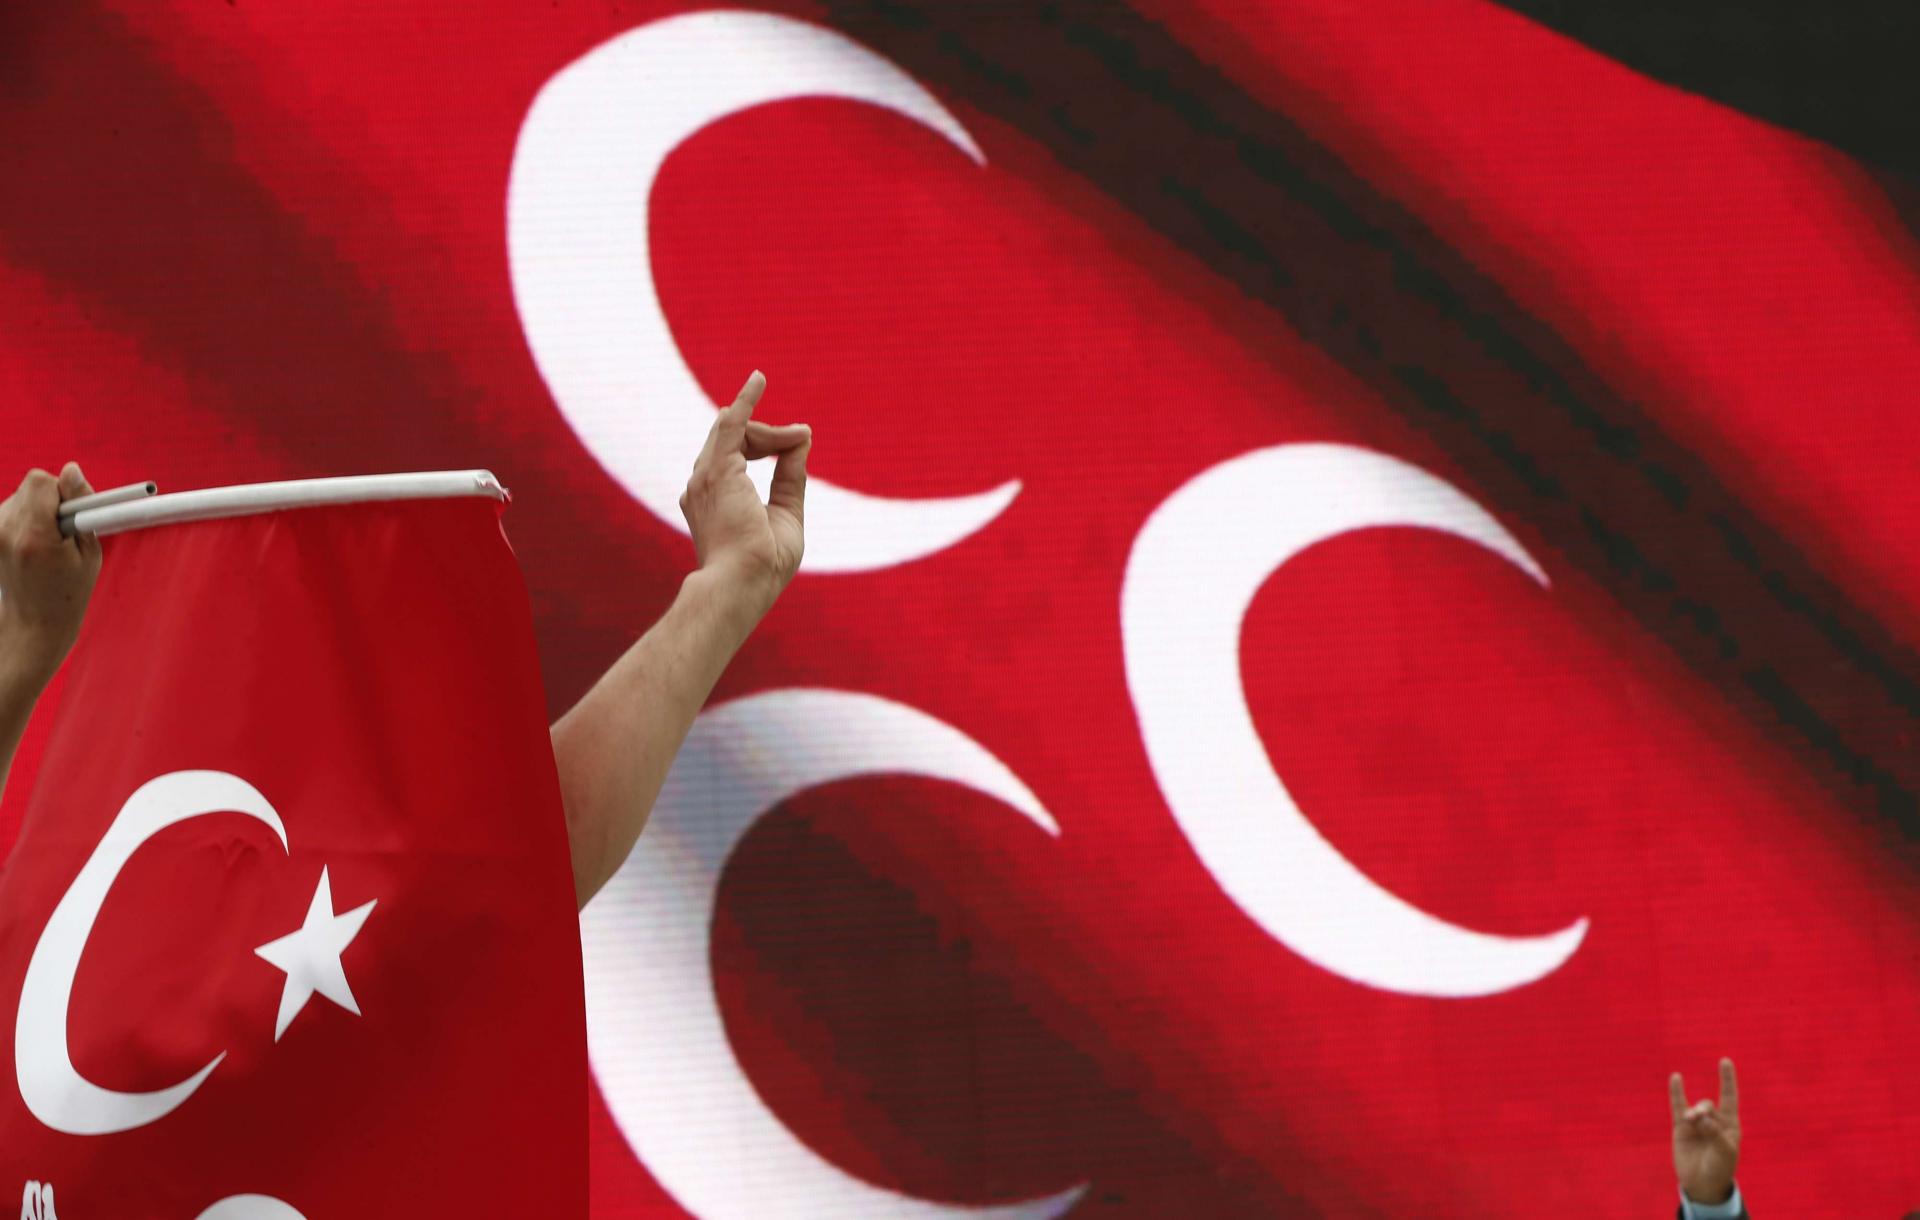 تركيا المنتقدة للعنصرية اكبر داعم للقومية المتعصبة